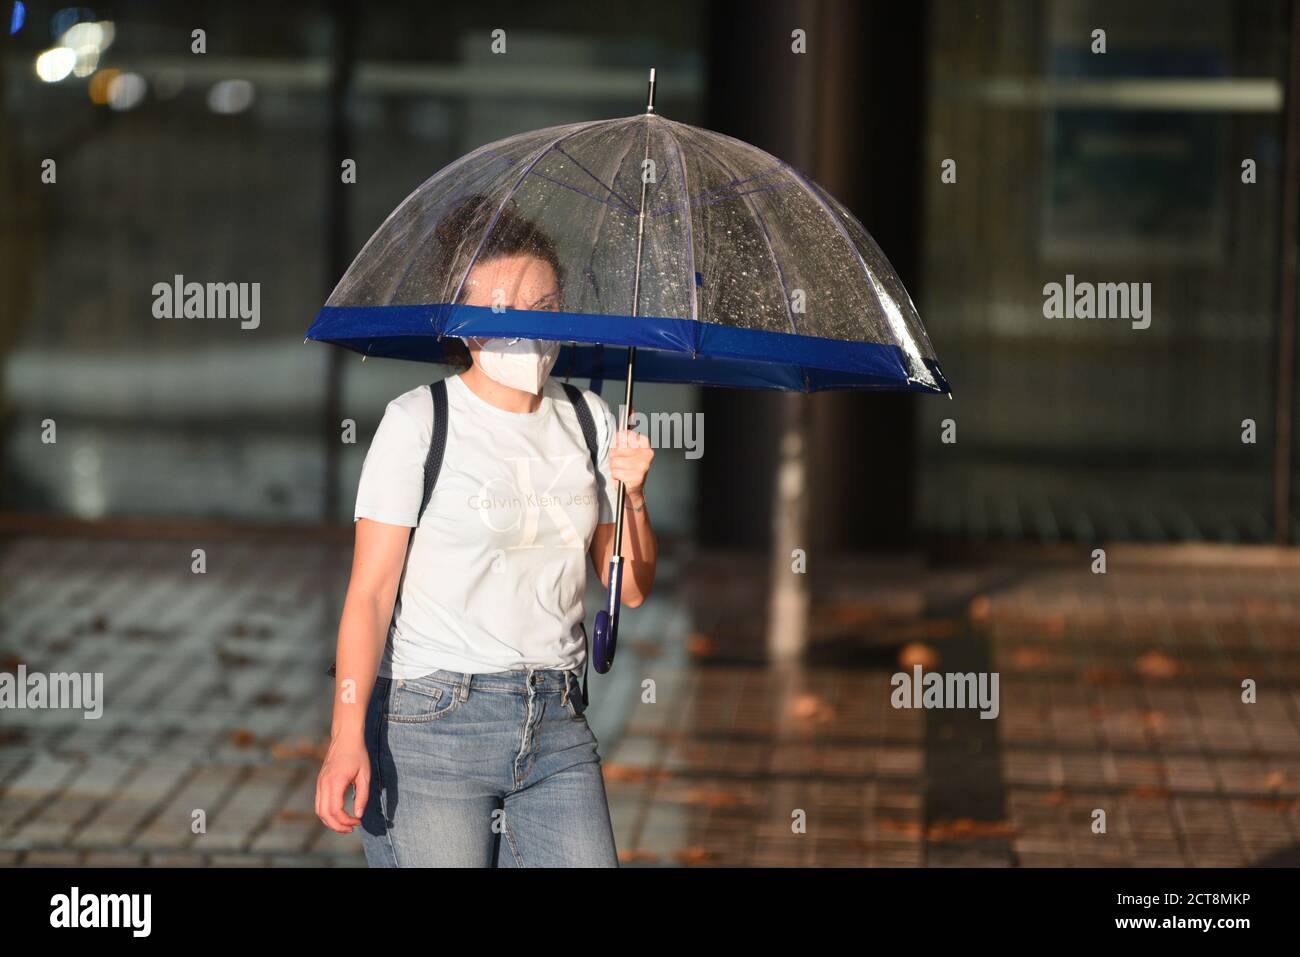 Barcelona, España. 21 de septiembre de 2020. Una mujer joven que lleva un  paraguas como protección contra la lluvia es vista usando una mascarilla  como medida preventiva contra la propagación del coronavirus.